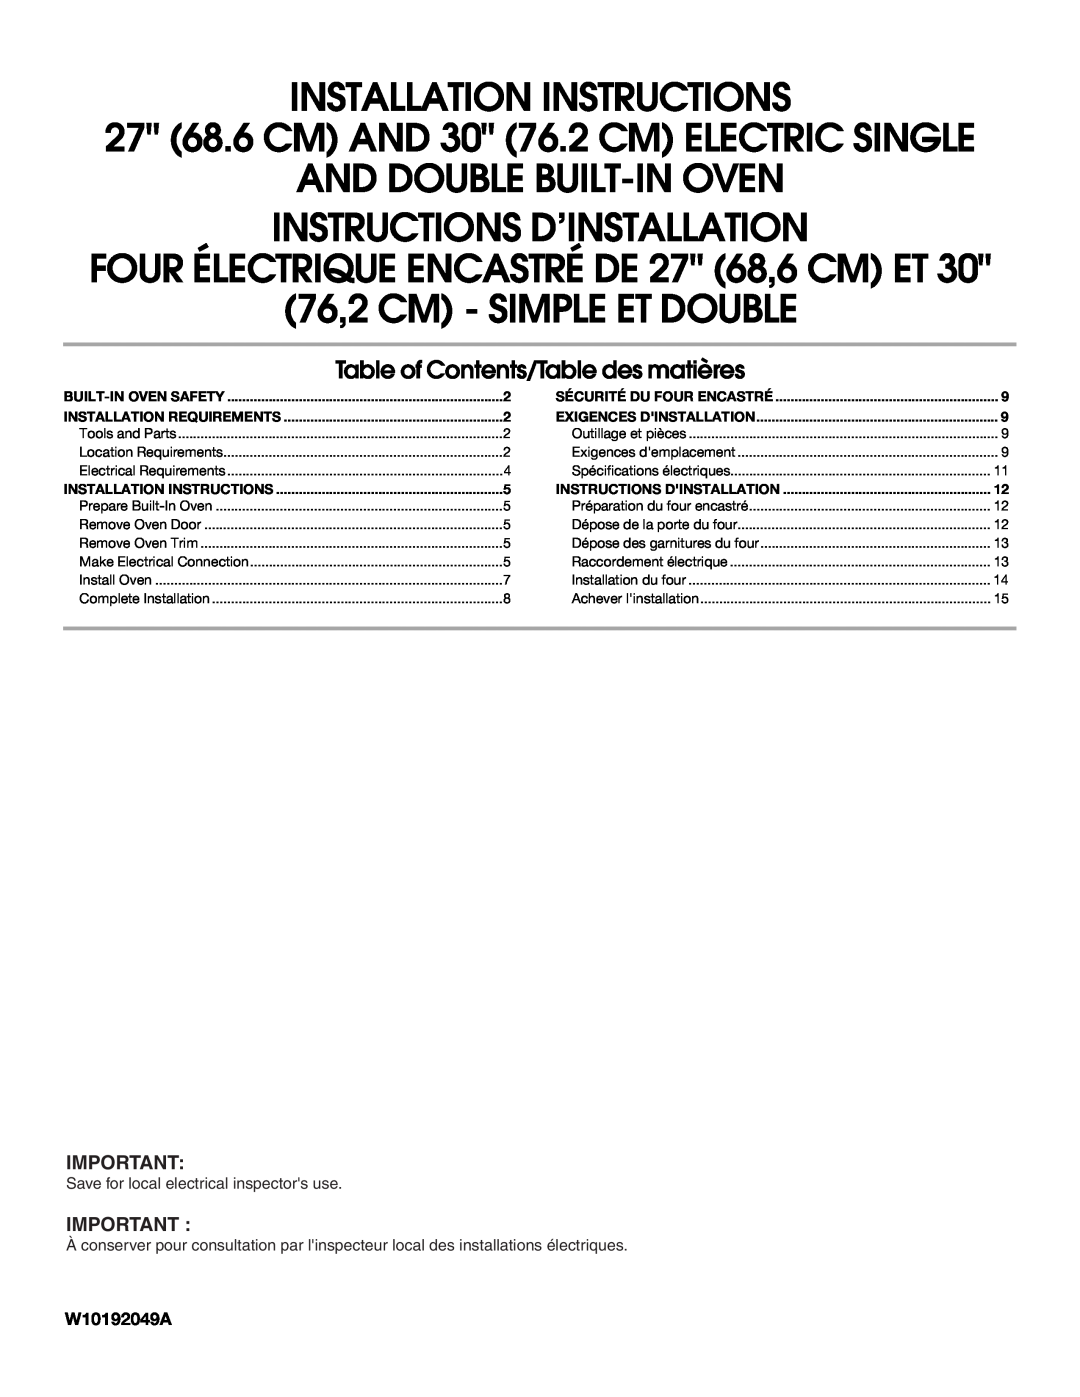 Whirlpool RBS277PV installation instructions FOUR ÉLECTRIQUE ENCASTRÉ DE 27 68,6 CM ET, W10192049A 